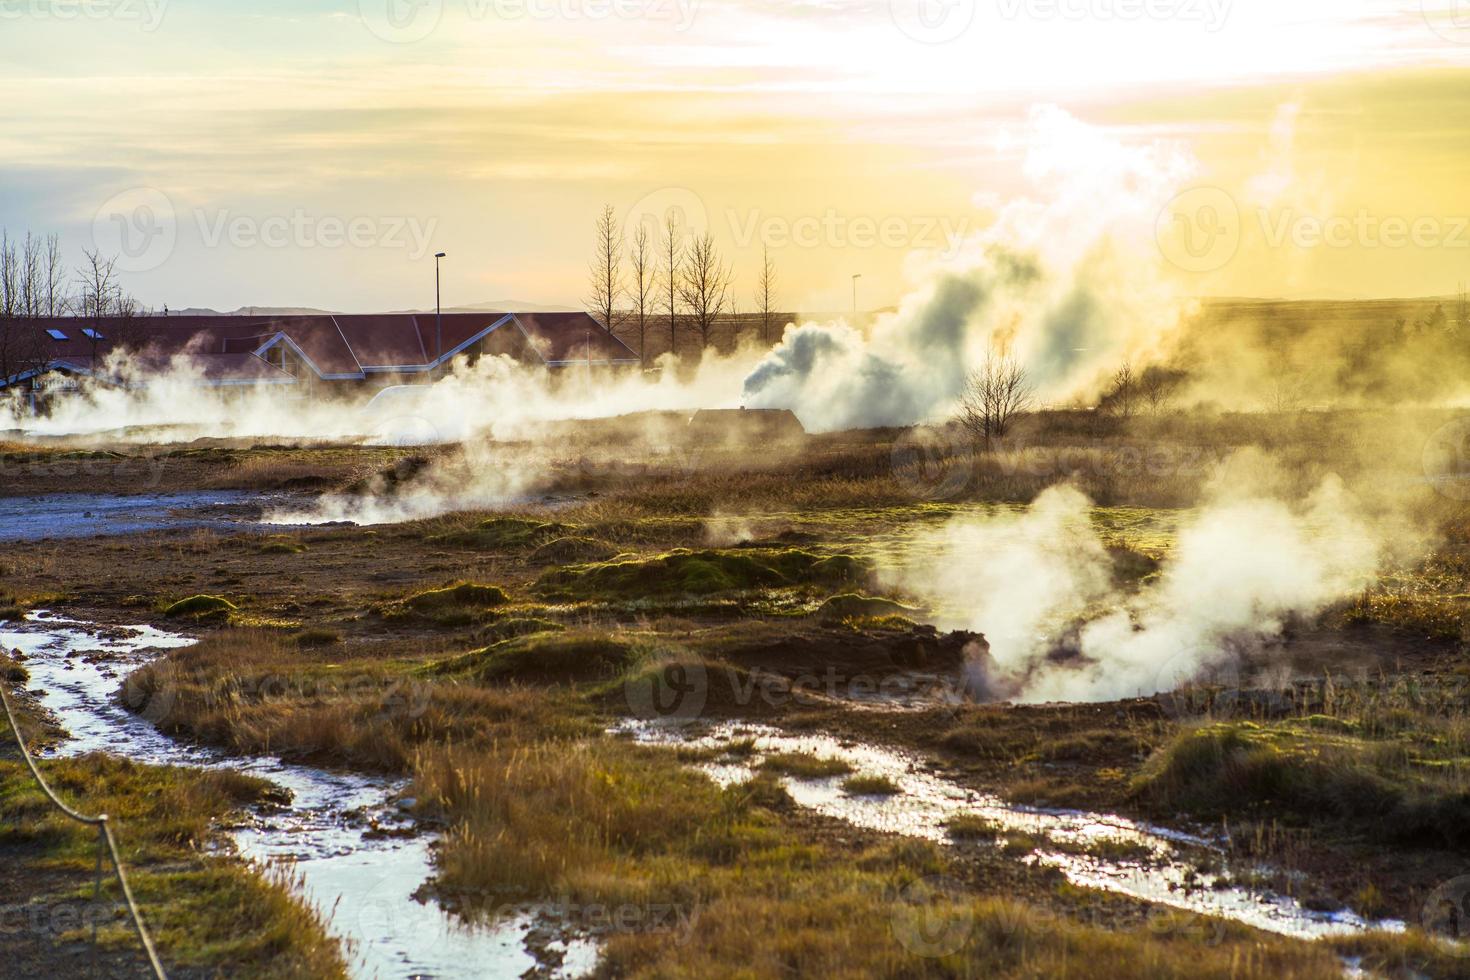 strokkur, l'un des geysers les plus célèbres situé dans une zone géothermique à côté de la rivière hvita dans la partie sud-ouest de l'islande, en éruption une fois toutes les 6 à 10 minutes photo